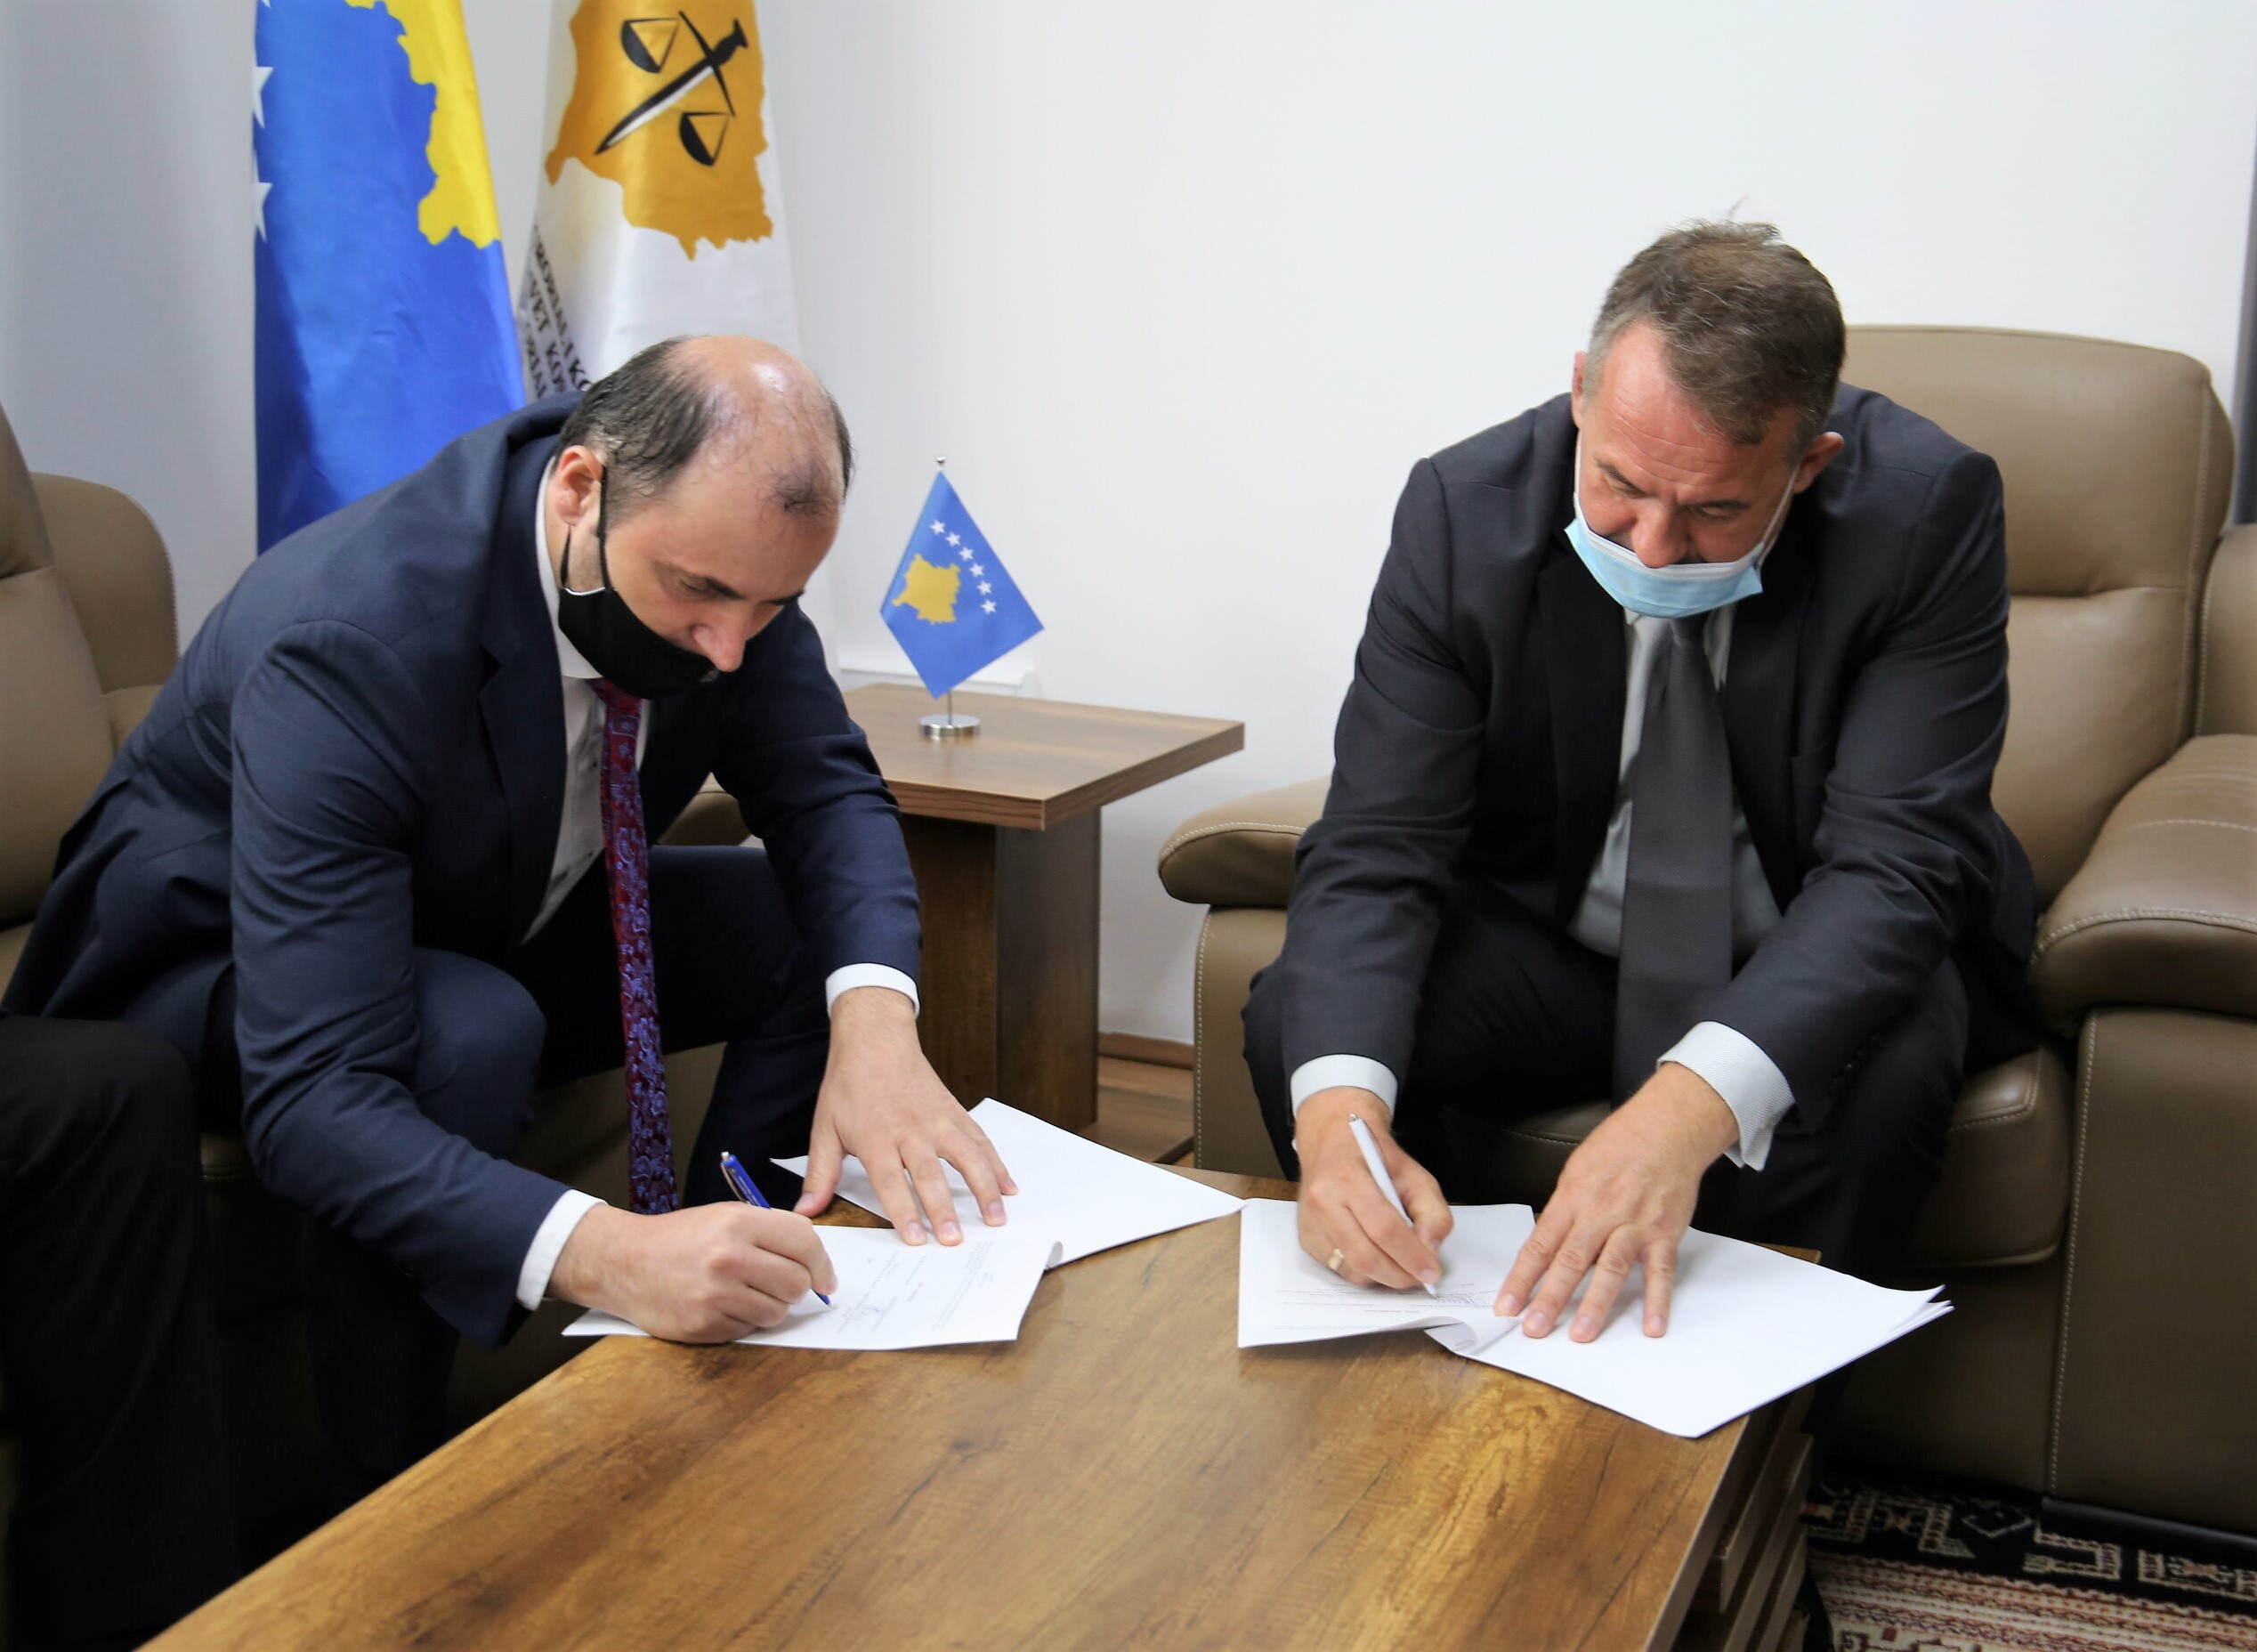 Potpisan je sporazum o saradnji između TSK-a i PAK-a